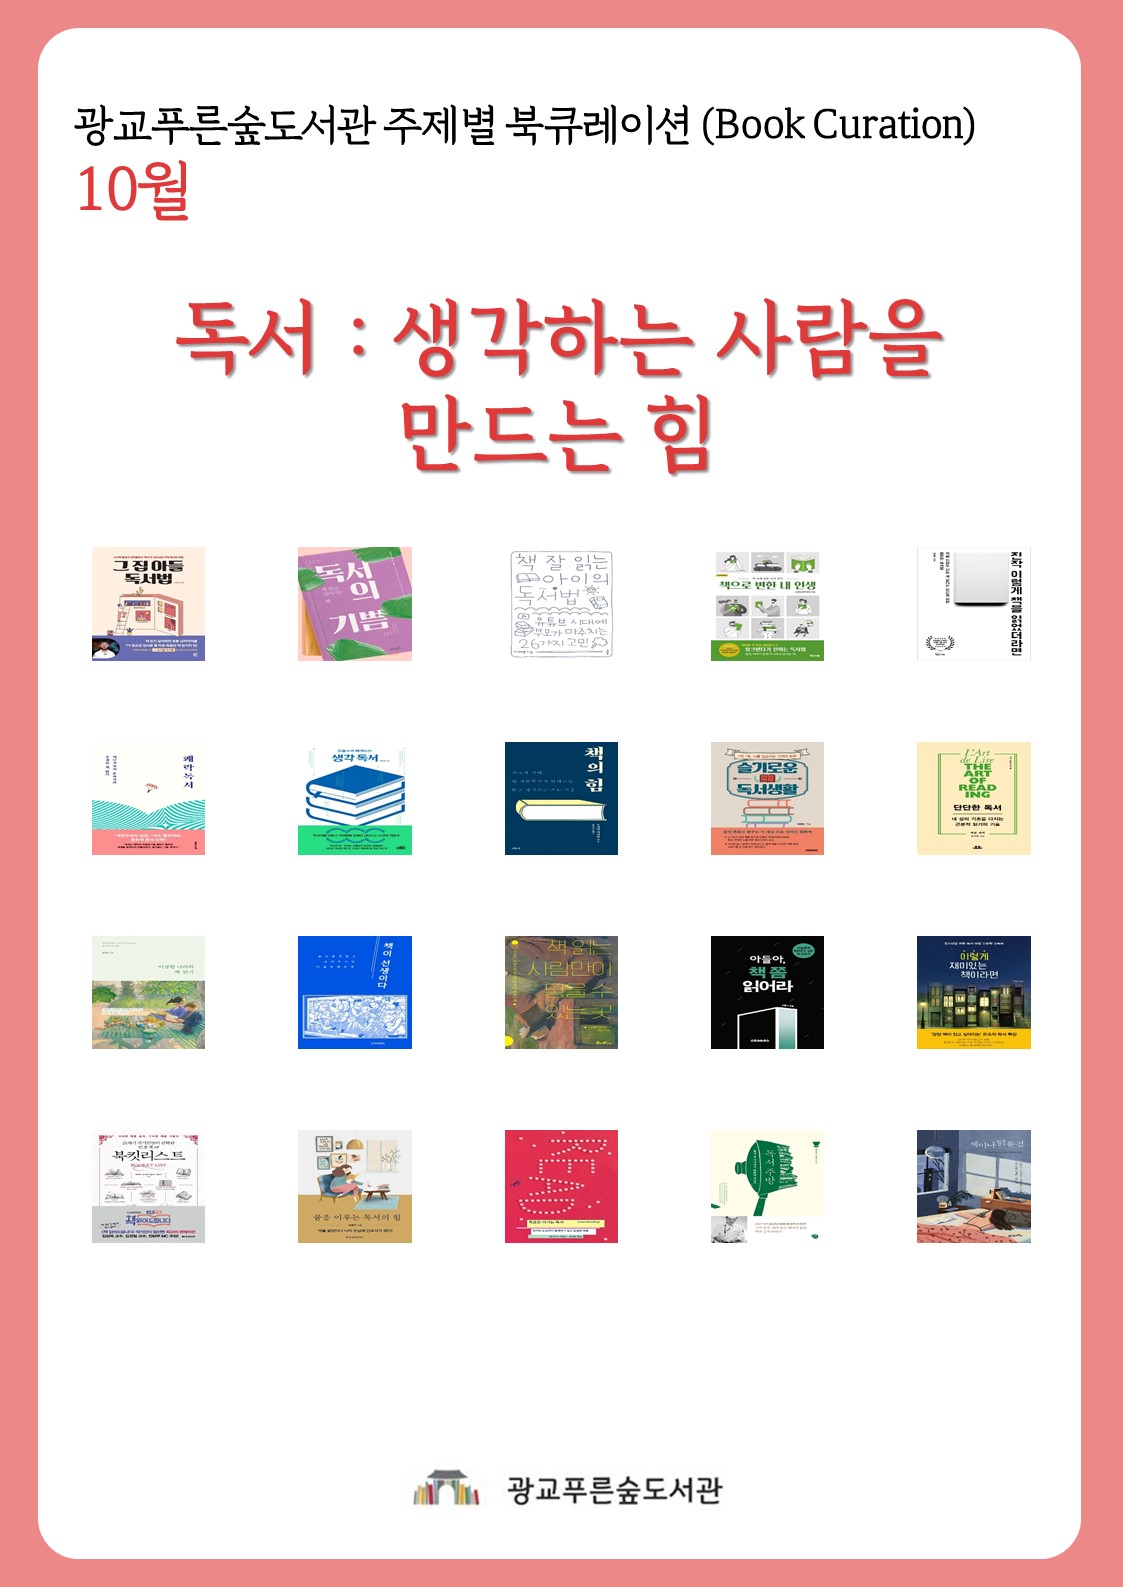 광교푸른숲도서관주제별북큐레이션안내문(10월).jpg